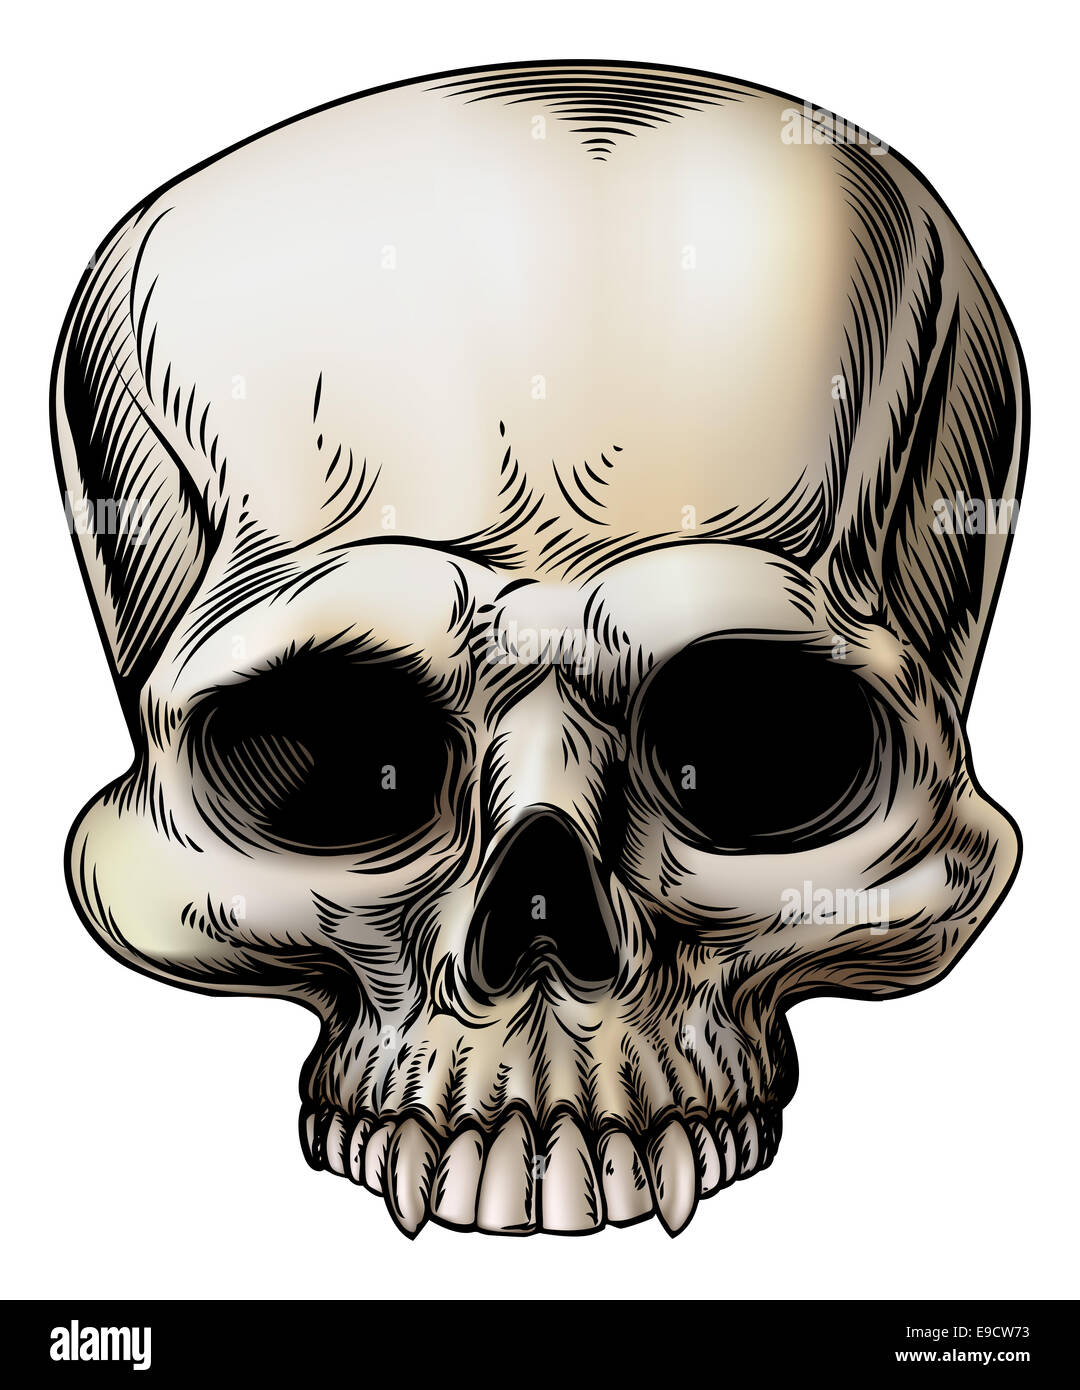 Crâne humain illustration dans un style vintage retro Banque D'Images